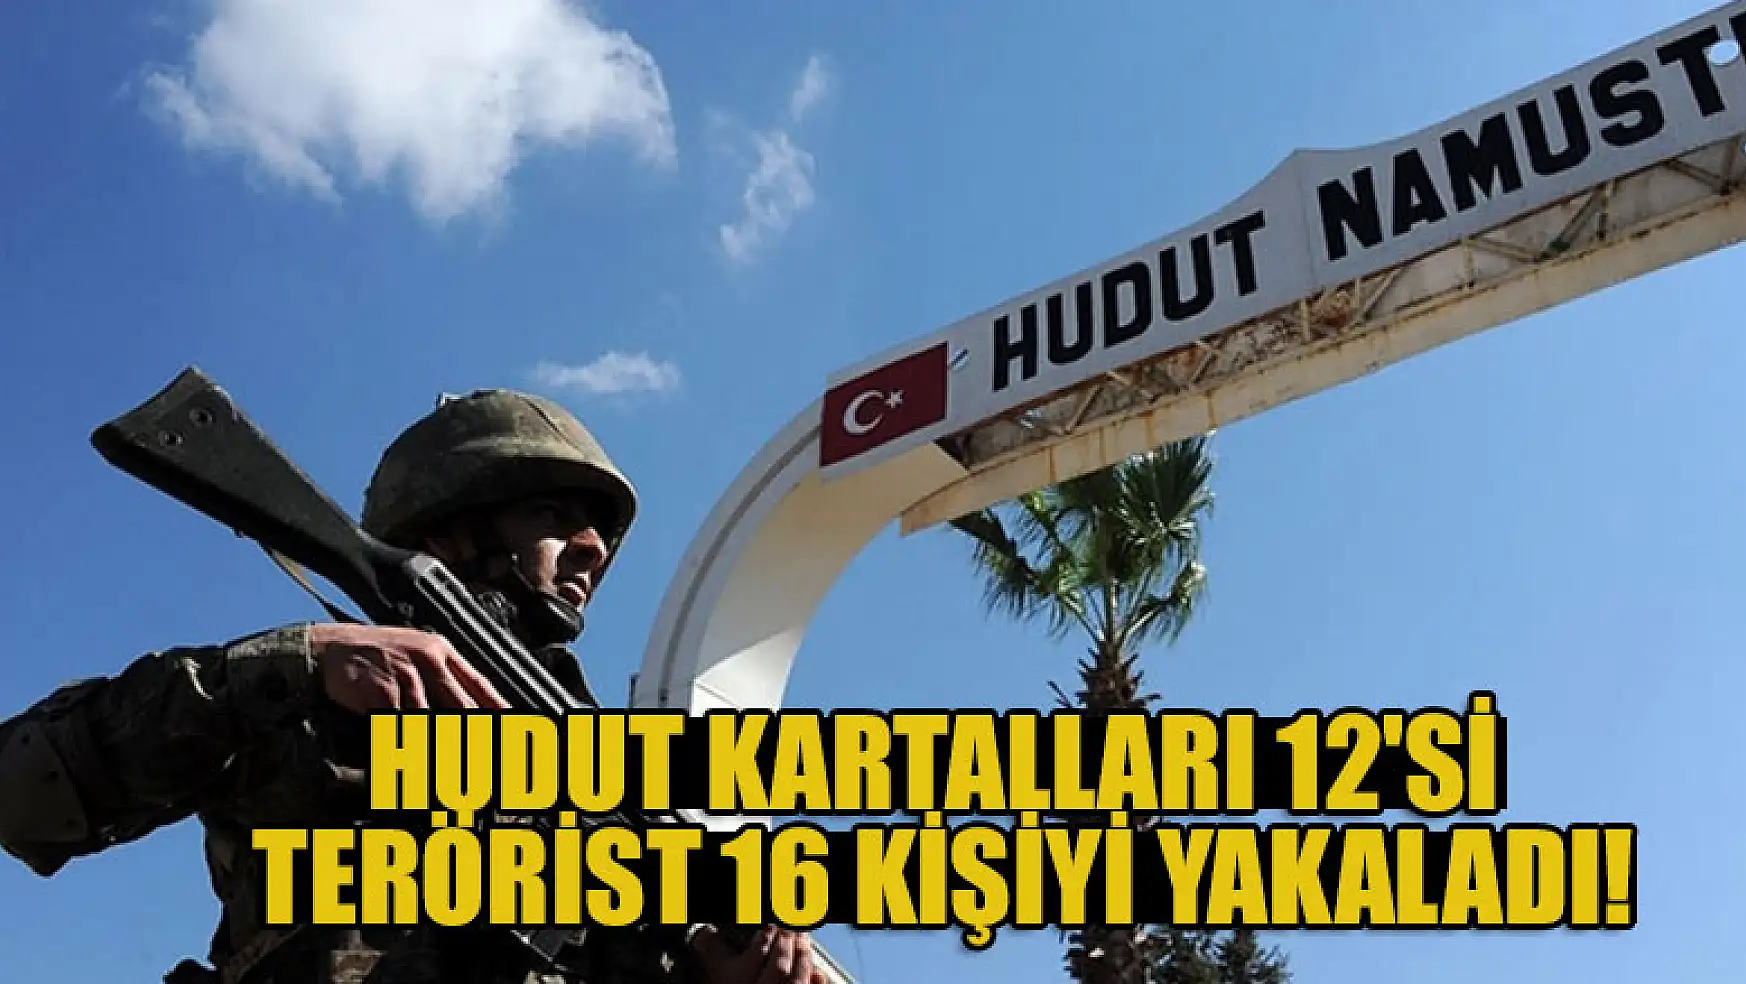 Hudut Kartalları 12'si terörist 16 kişiyi yakaladı!